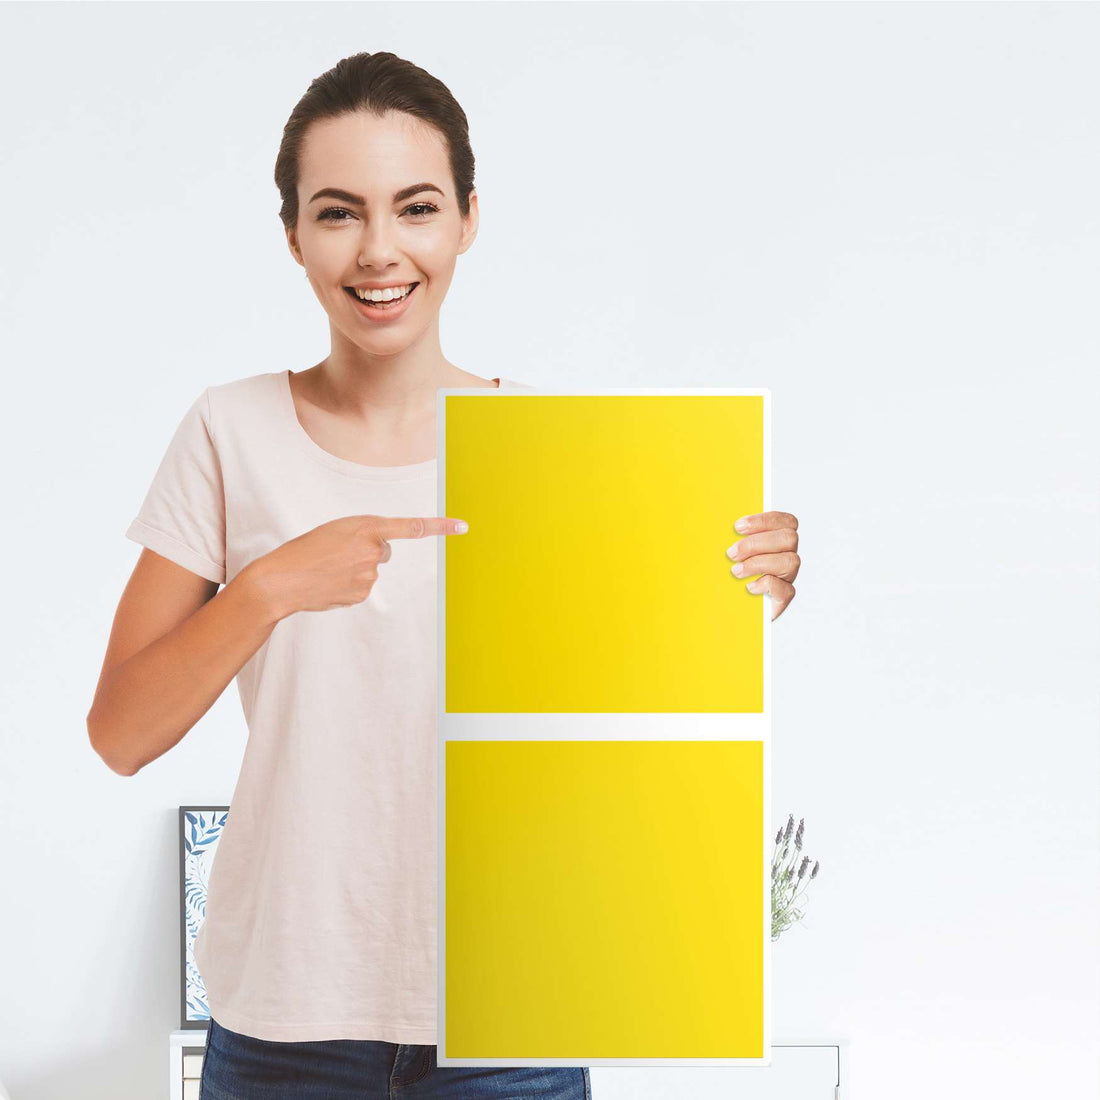 Klebefolie für Möbel Gelb Dark - IKEA Expedit Regal 2 Türen Hoch - Folie